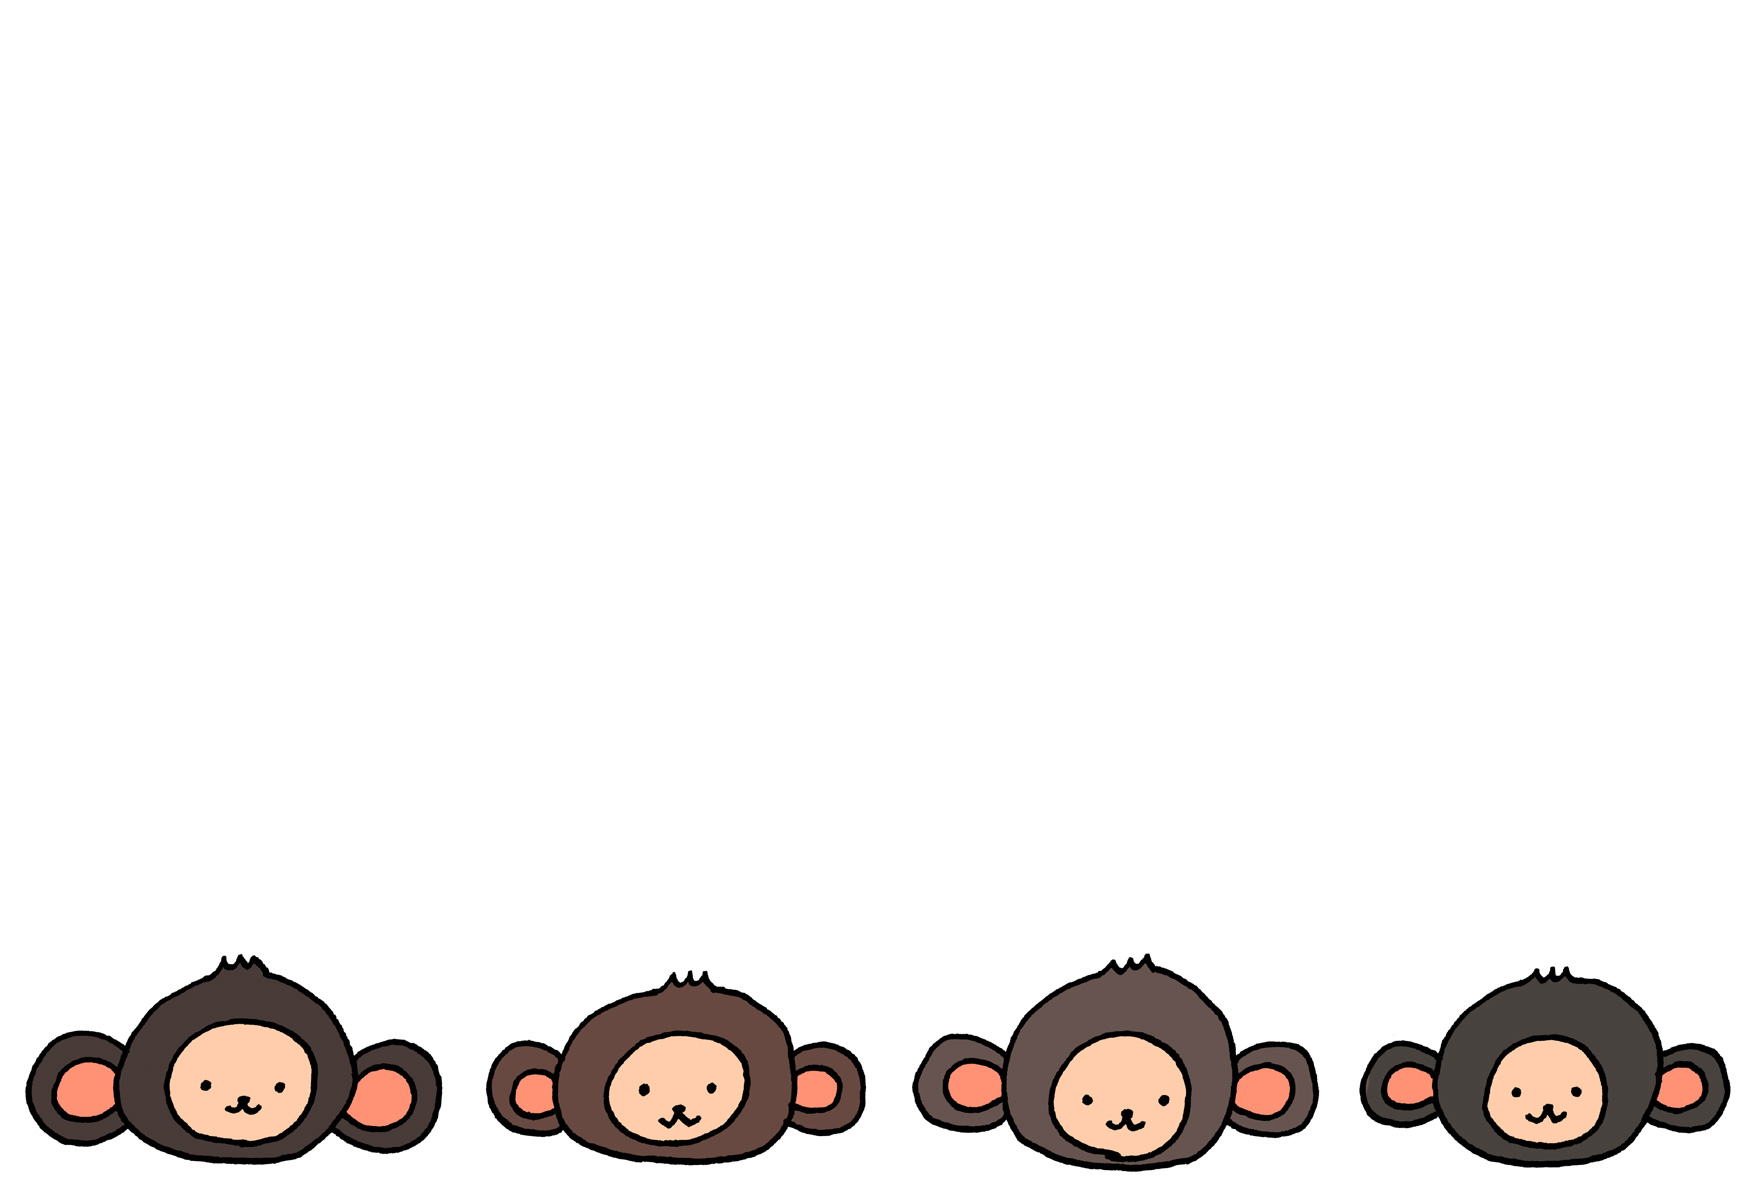 4匹の猿の申年年賀状イラスト素材